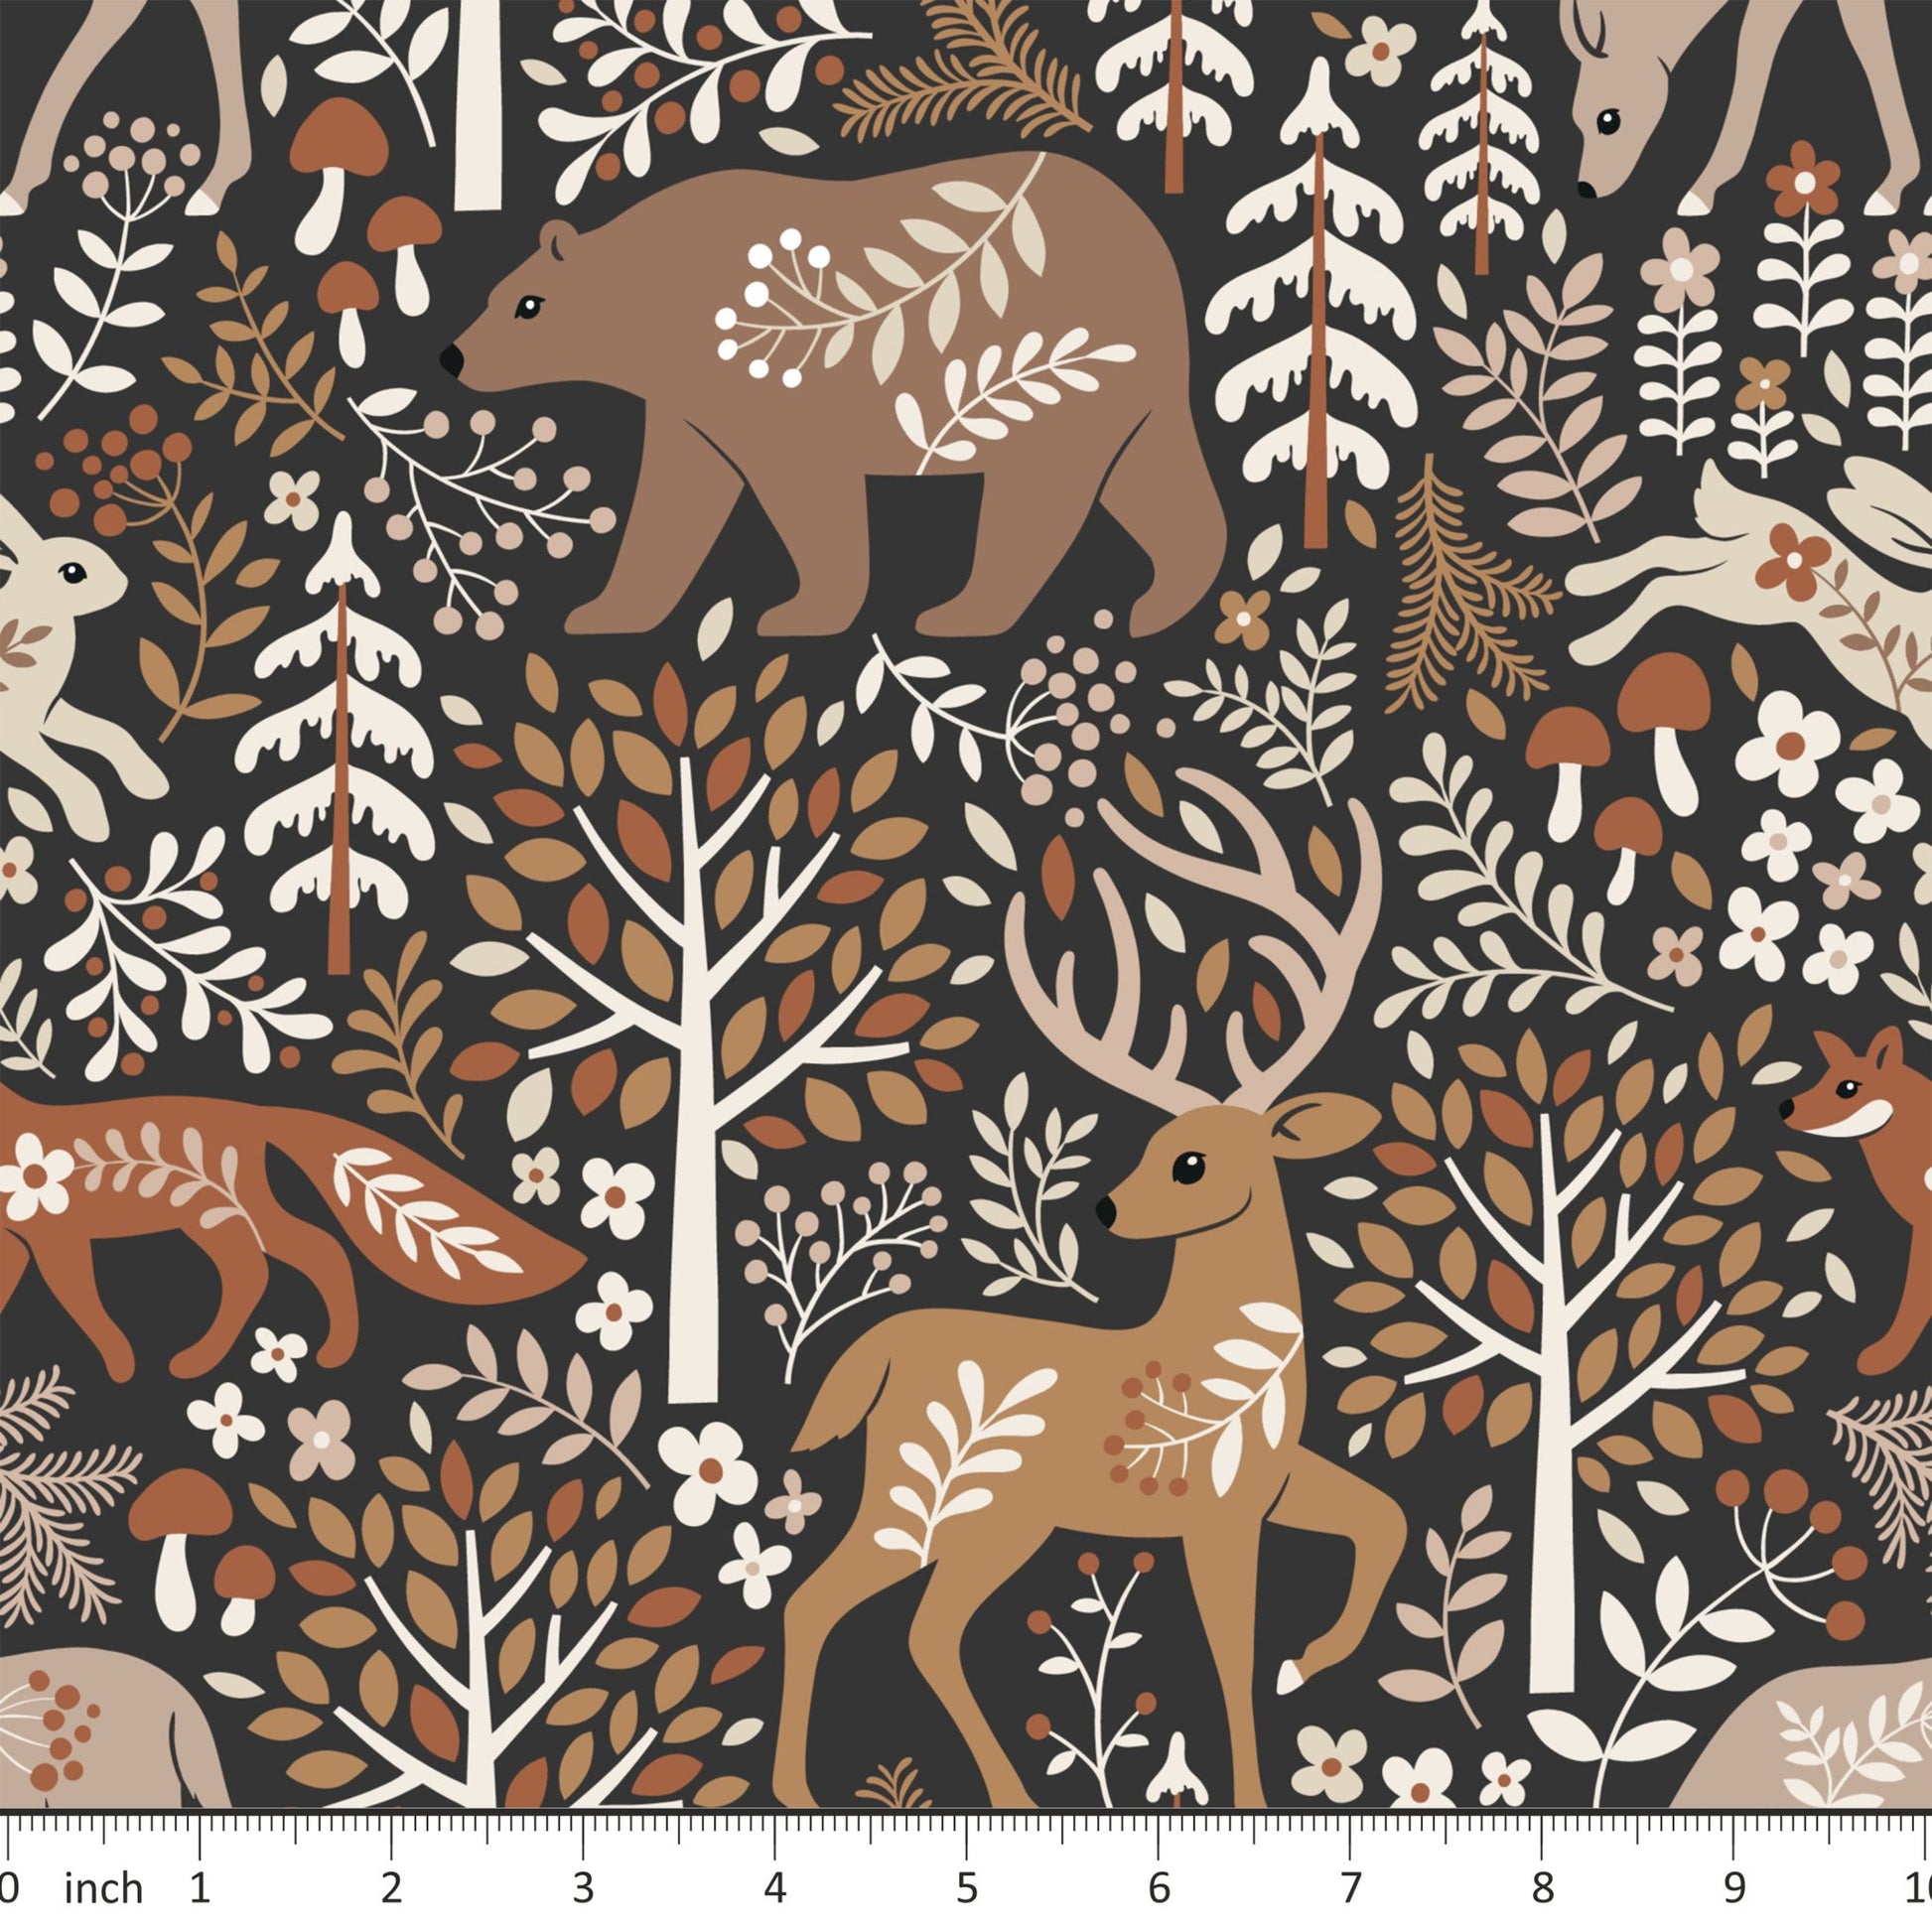 Mirabelle Print - Folk Forest Animals - on Dark Brown - Little Rhody Sewing Co.